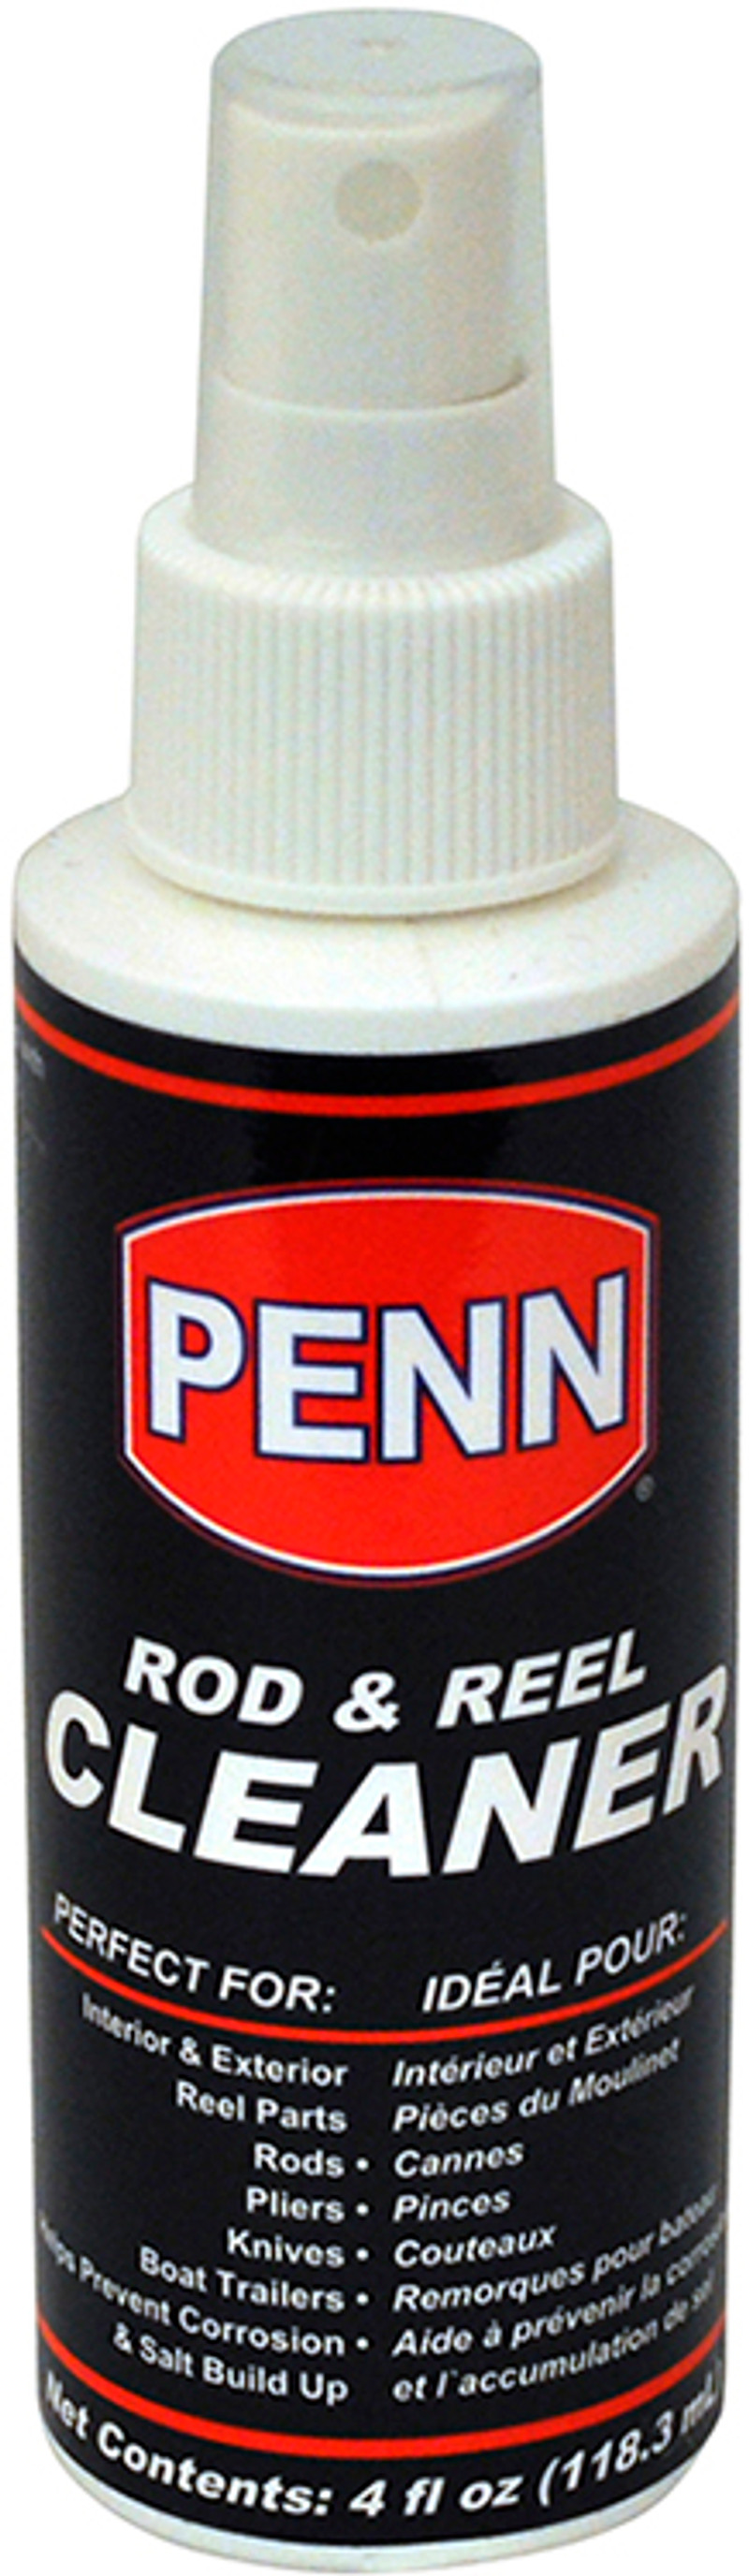 Penn Rod & Reel Cleaner - 4oz Spray Bottle